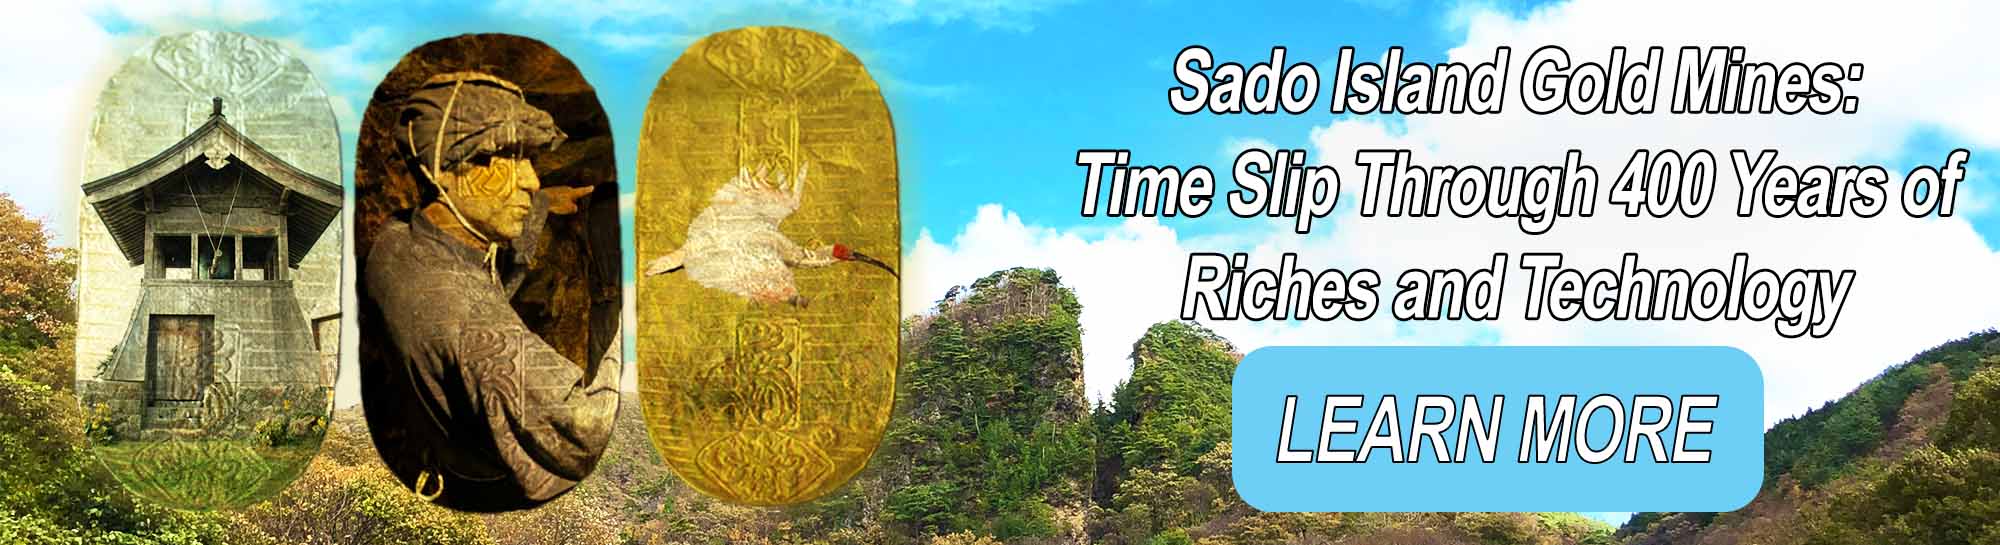 Sado Island Gold Mines: de tijd verstrijkt 400 jaar rijkdom en technologie